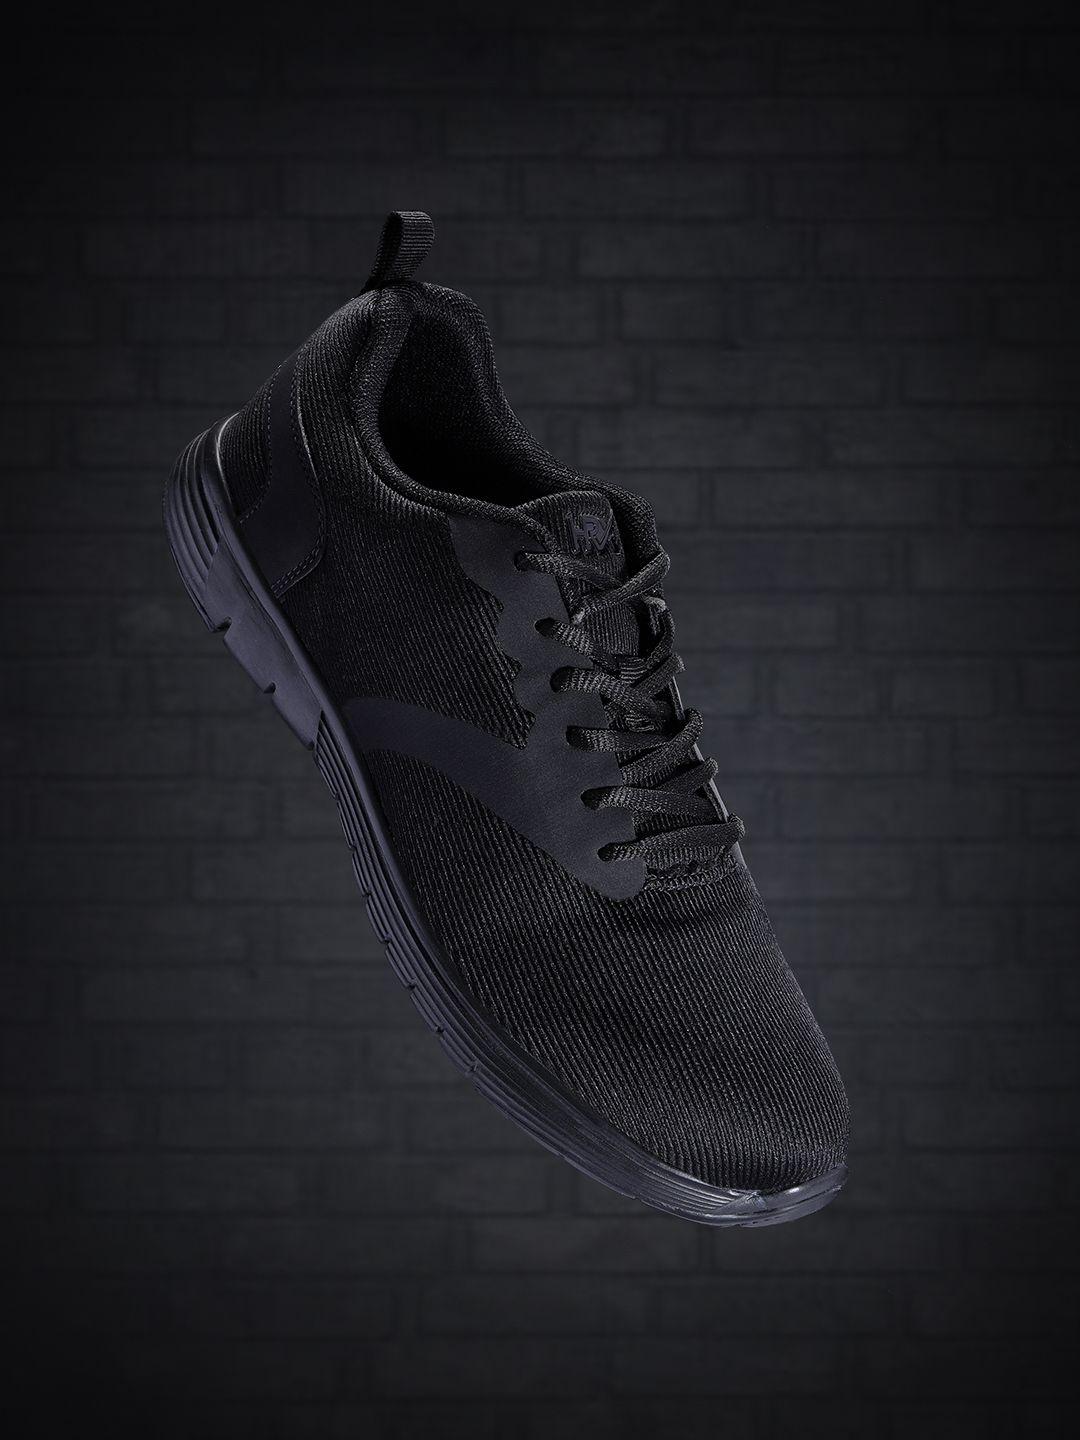 hrx-by-hrithik-roshan-men-black-woven-design-runner-shoes